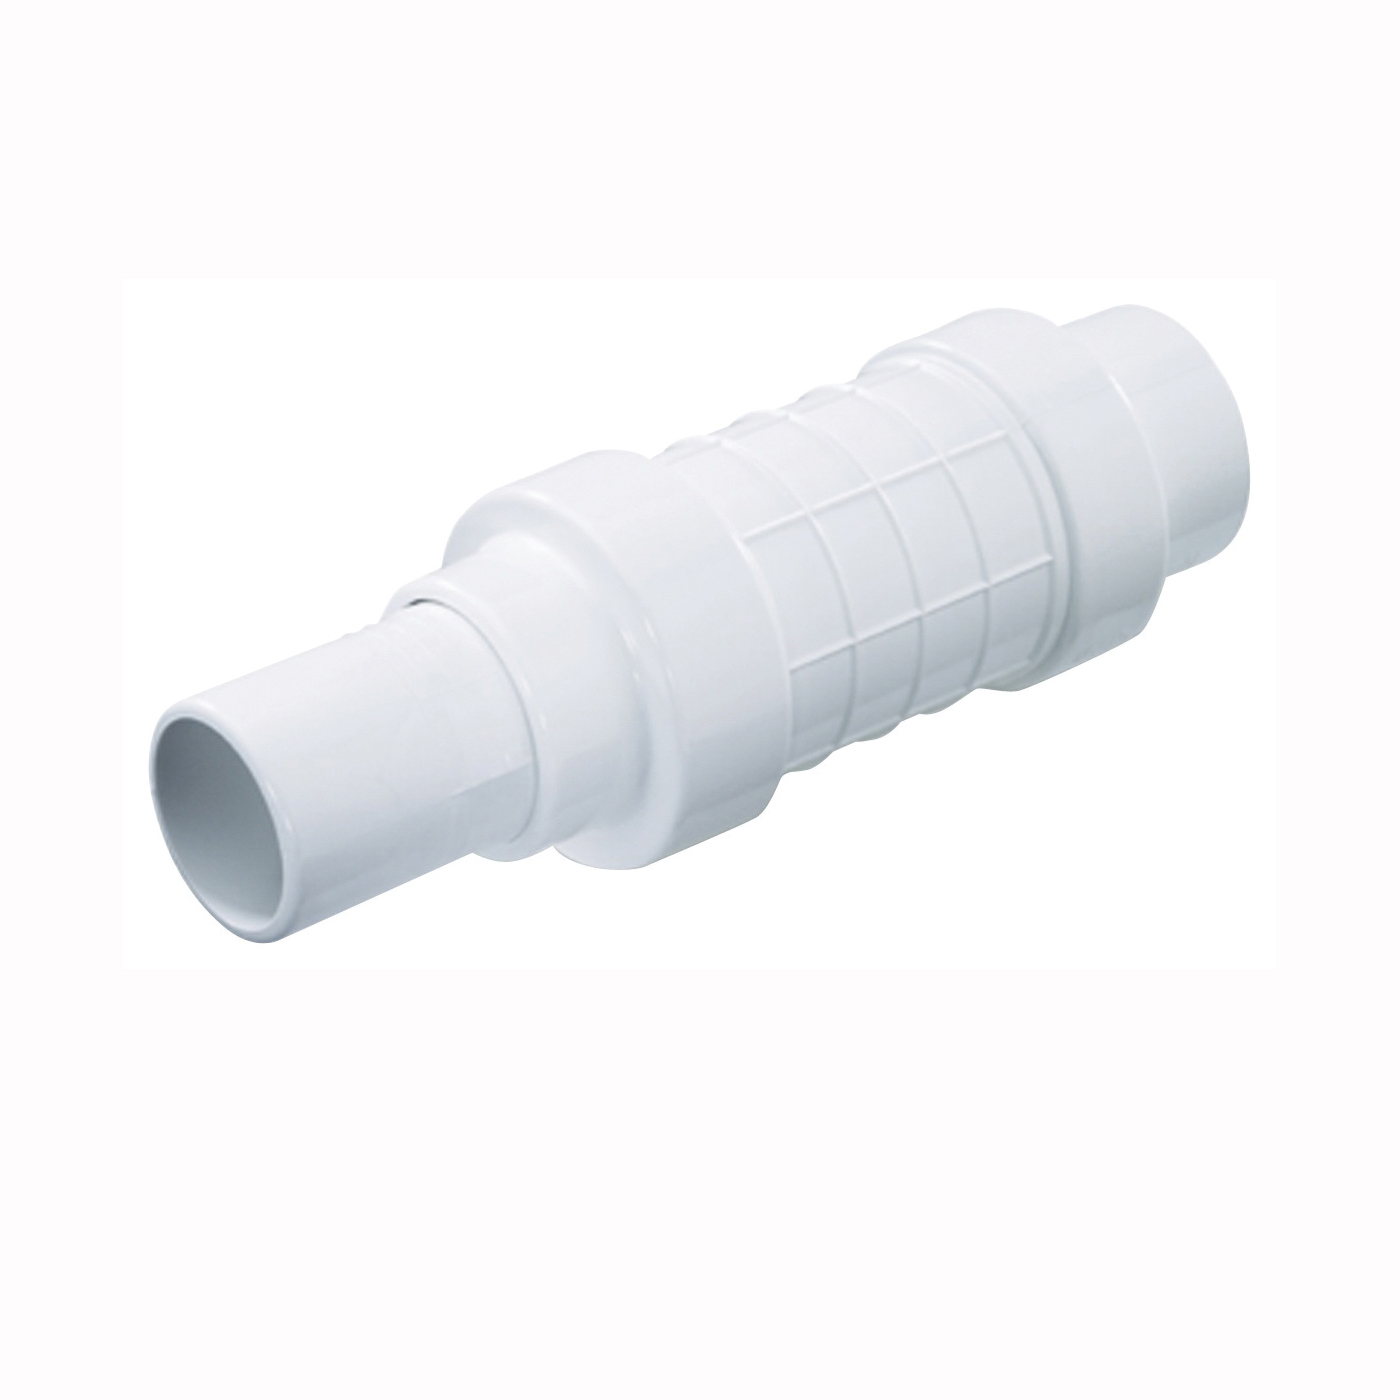 NDS Quik-Fix QF-0750 Pipe Repair Coupling, 3/4 in, Socket x Spigot, White, SCH 40 Schedule, 150 psi Pressure